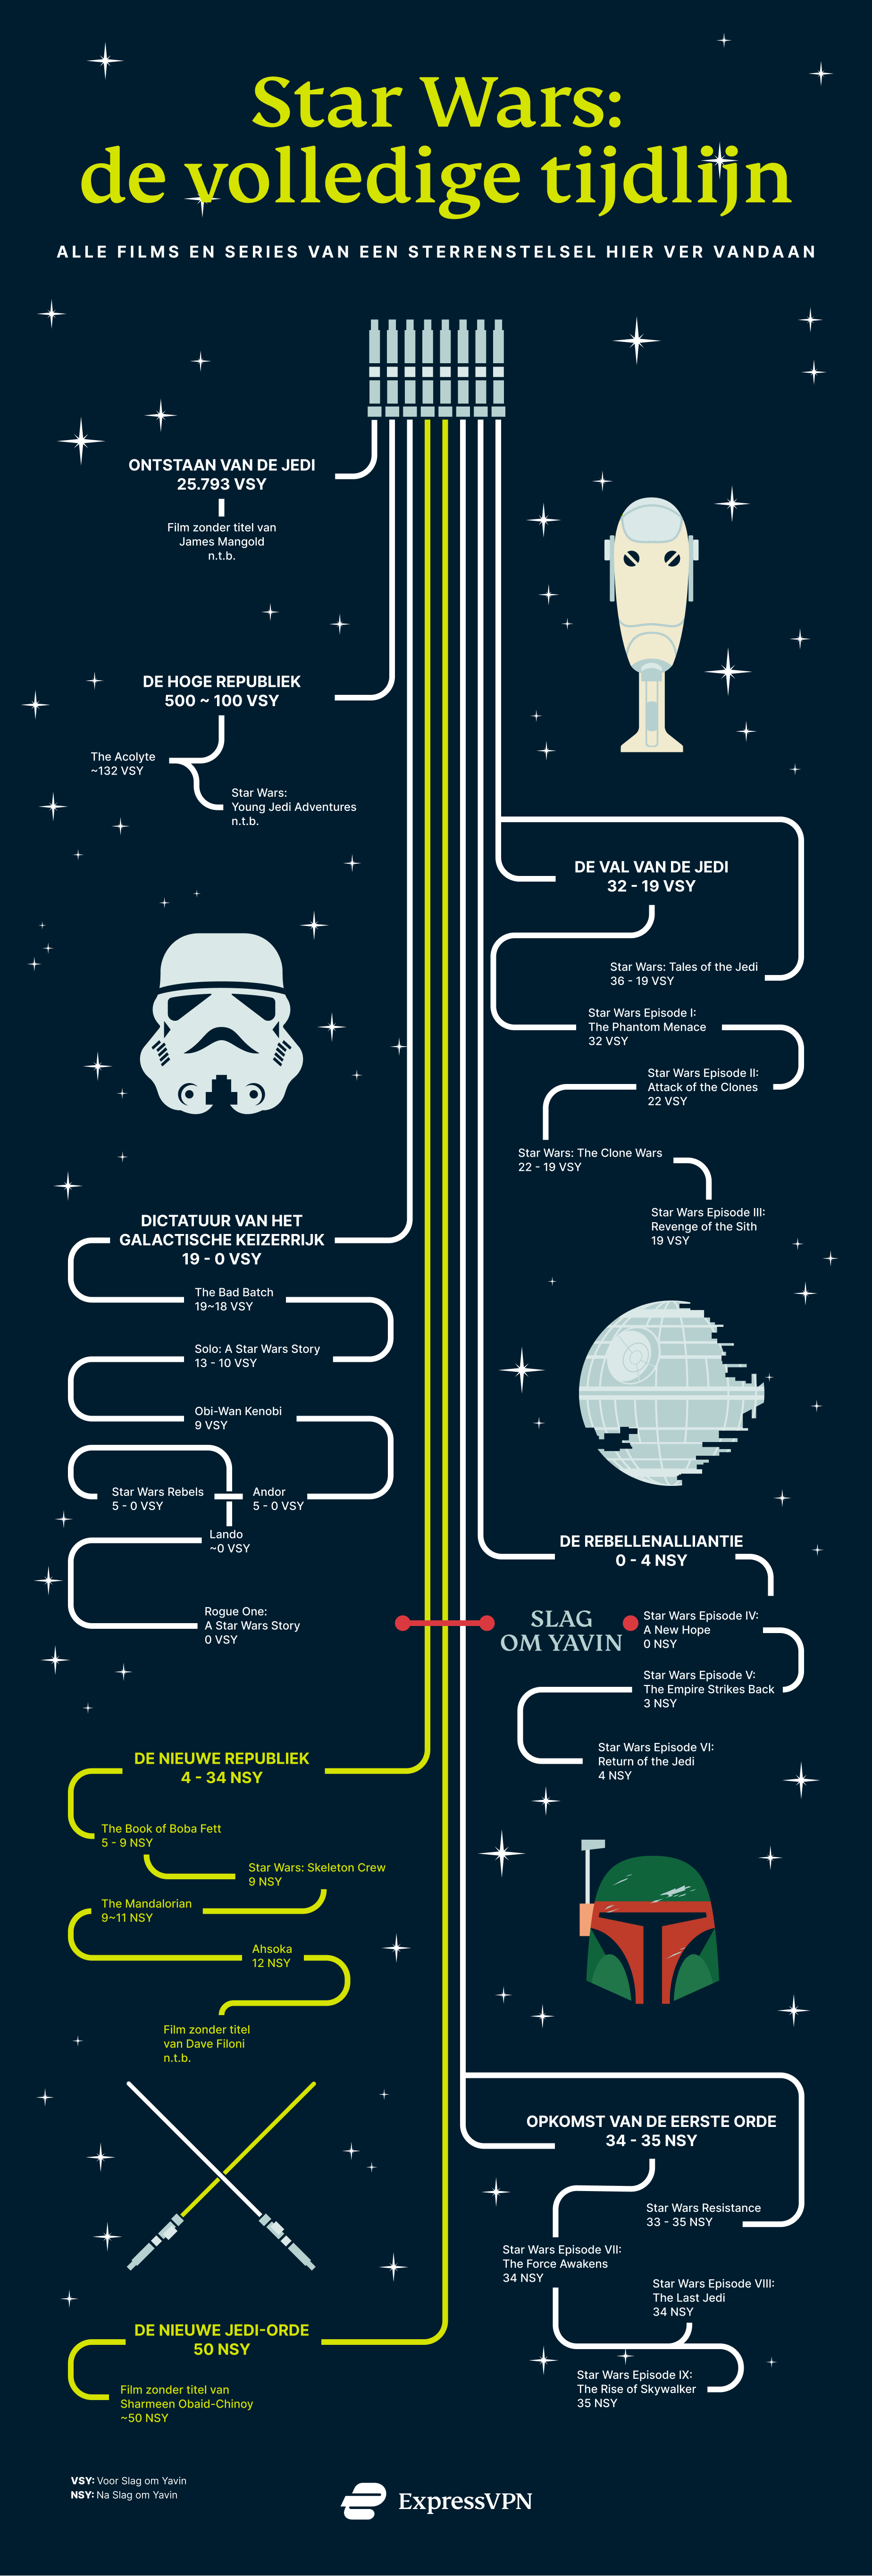 Star Wars-volgorde: tijdlijn van Star Wars-films en -series